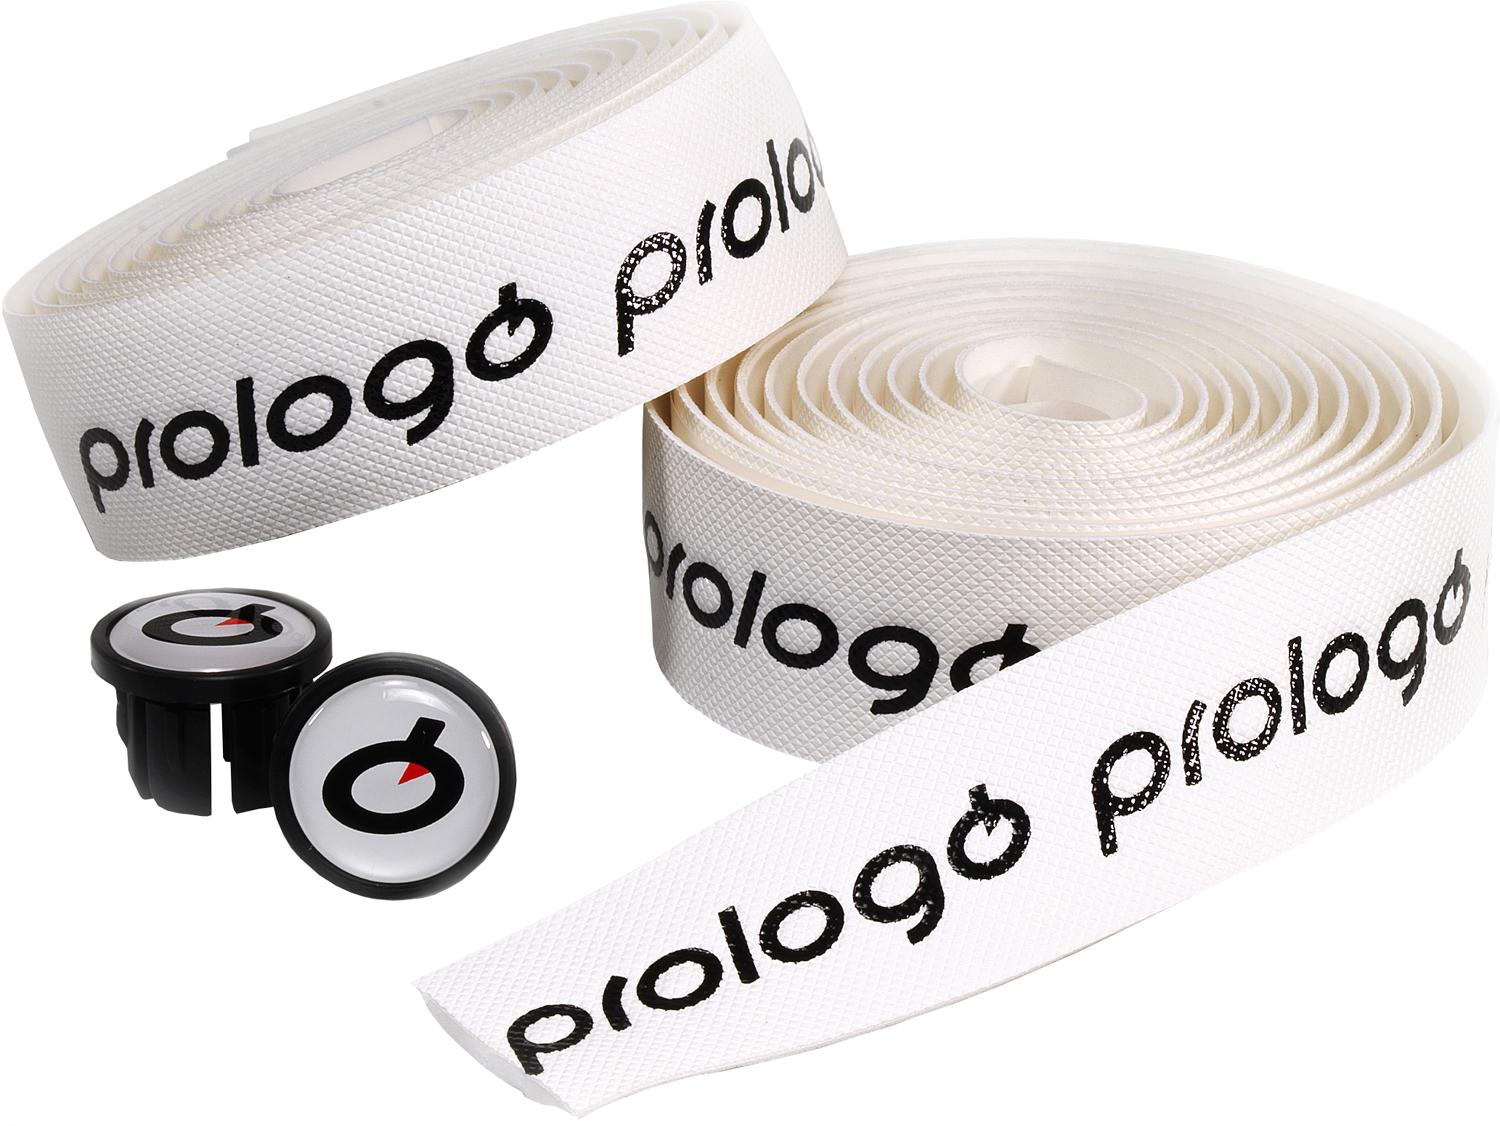 Most bar tape perfect for Pinarello. #pinarellof10 #pinare…